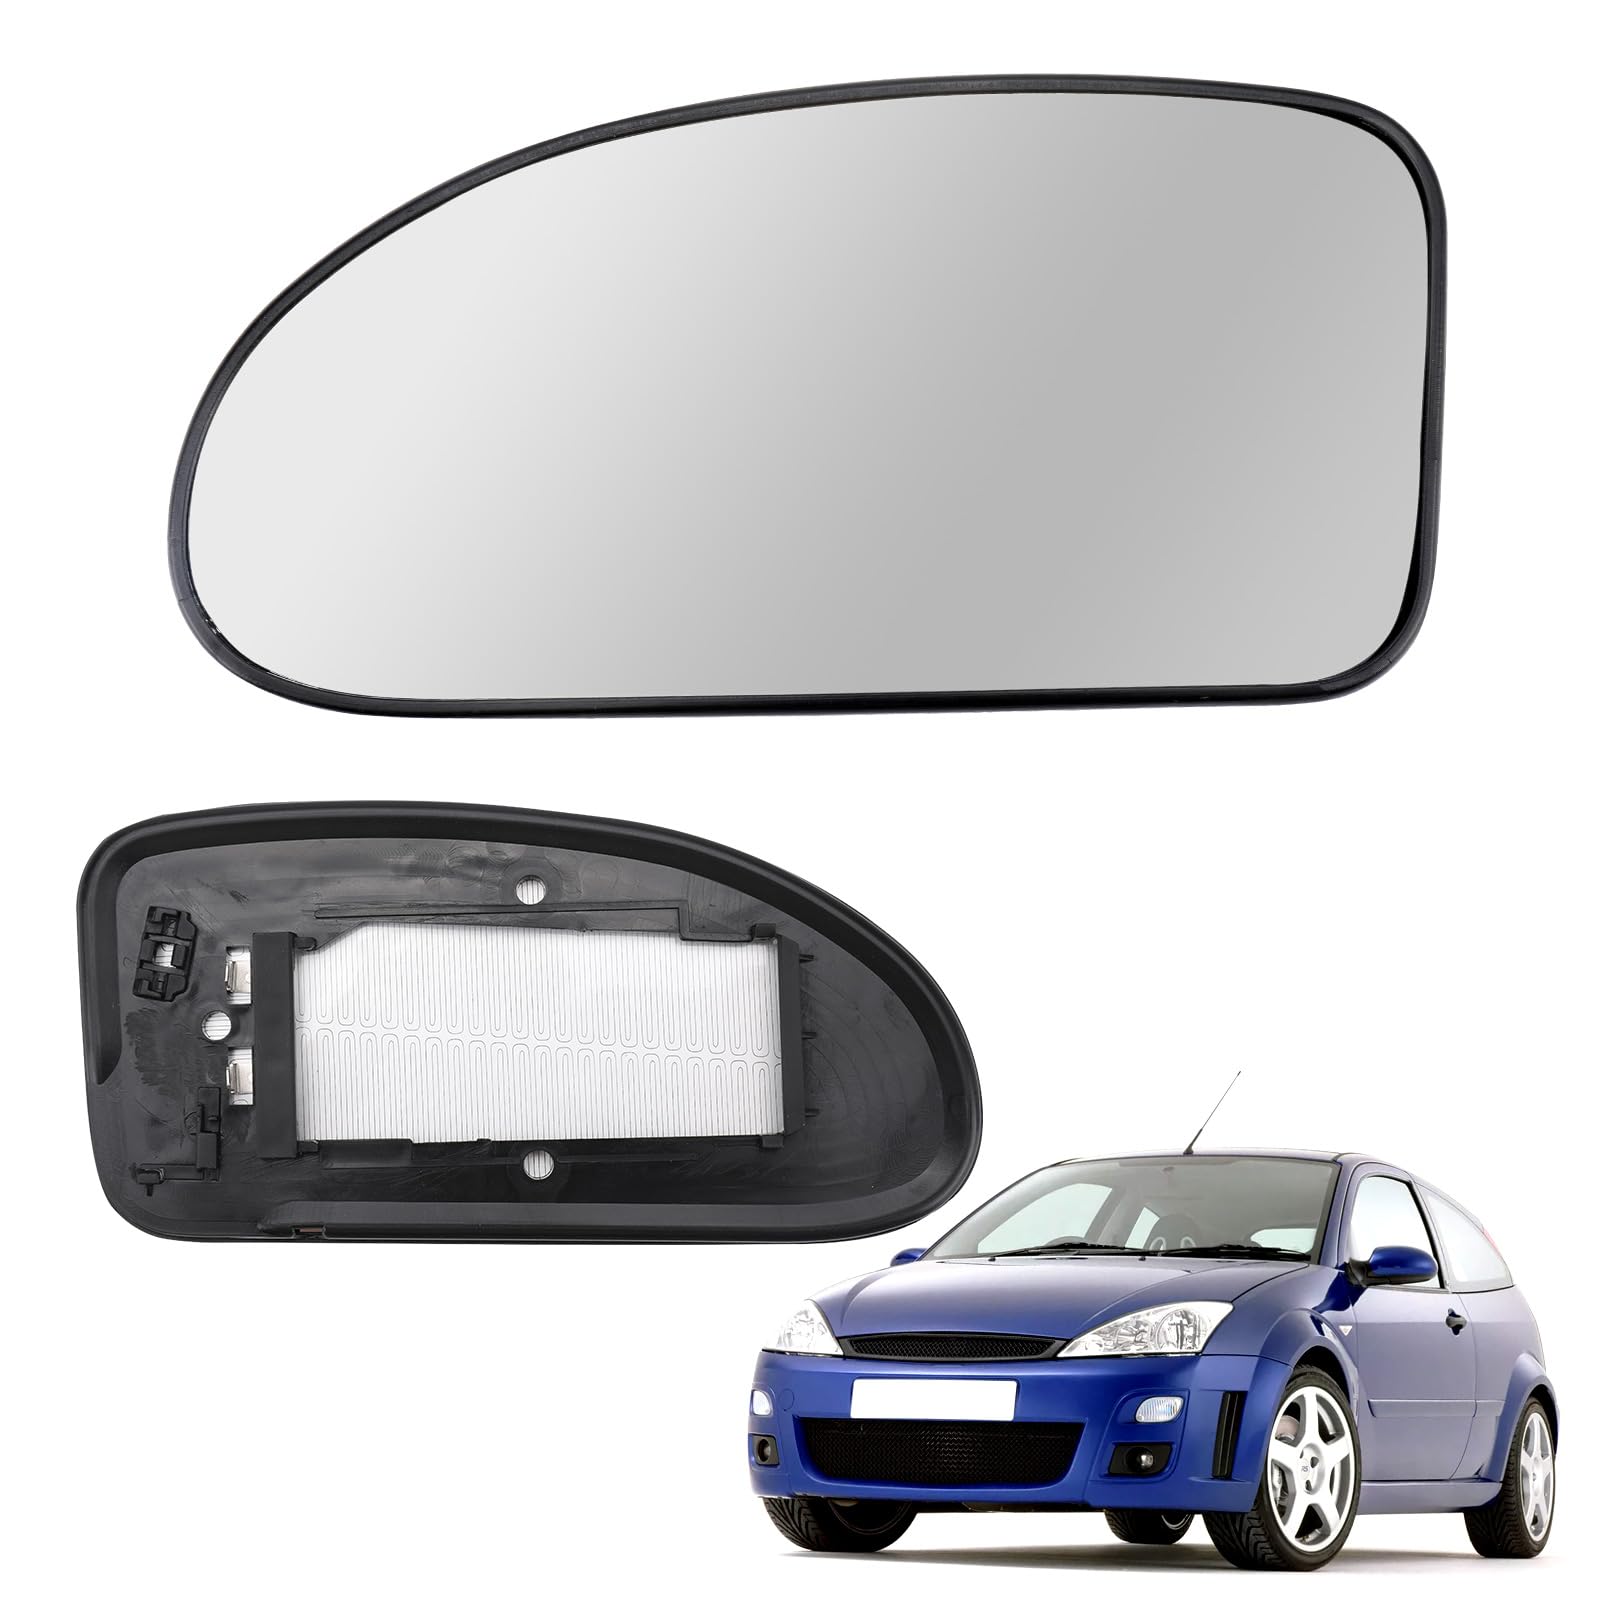 Beheiztes Spiegelglas, Außenspiegelglas Kompatibel mit Ford KA MK2 2008-2016, MK1 1996-2008, Focus MK1 1998-2004, Rückspiegel Glas Beheiztes (Focus MK1-Links) von Roadtime